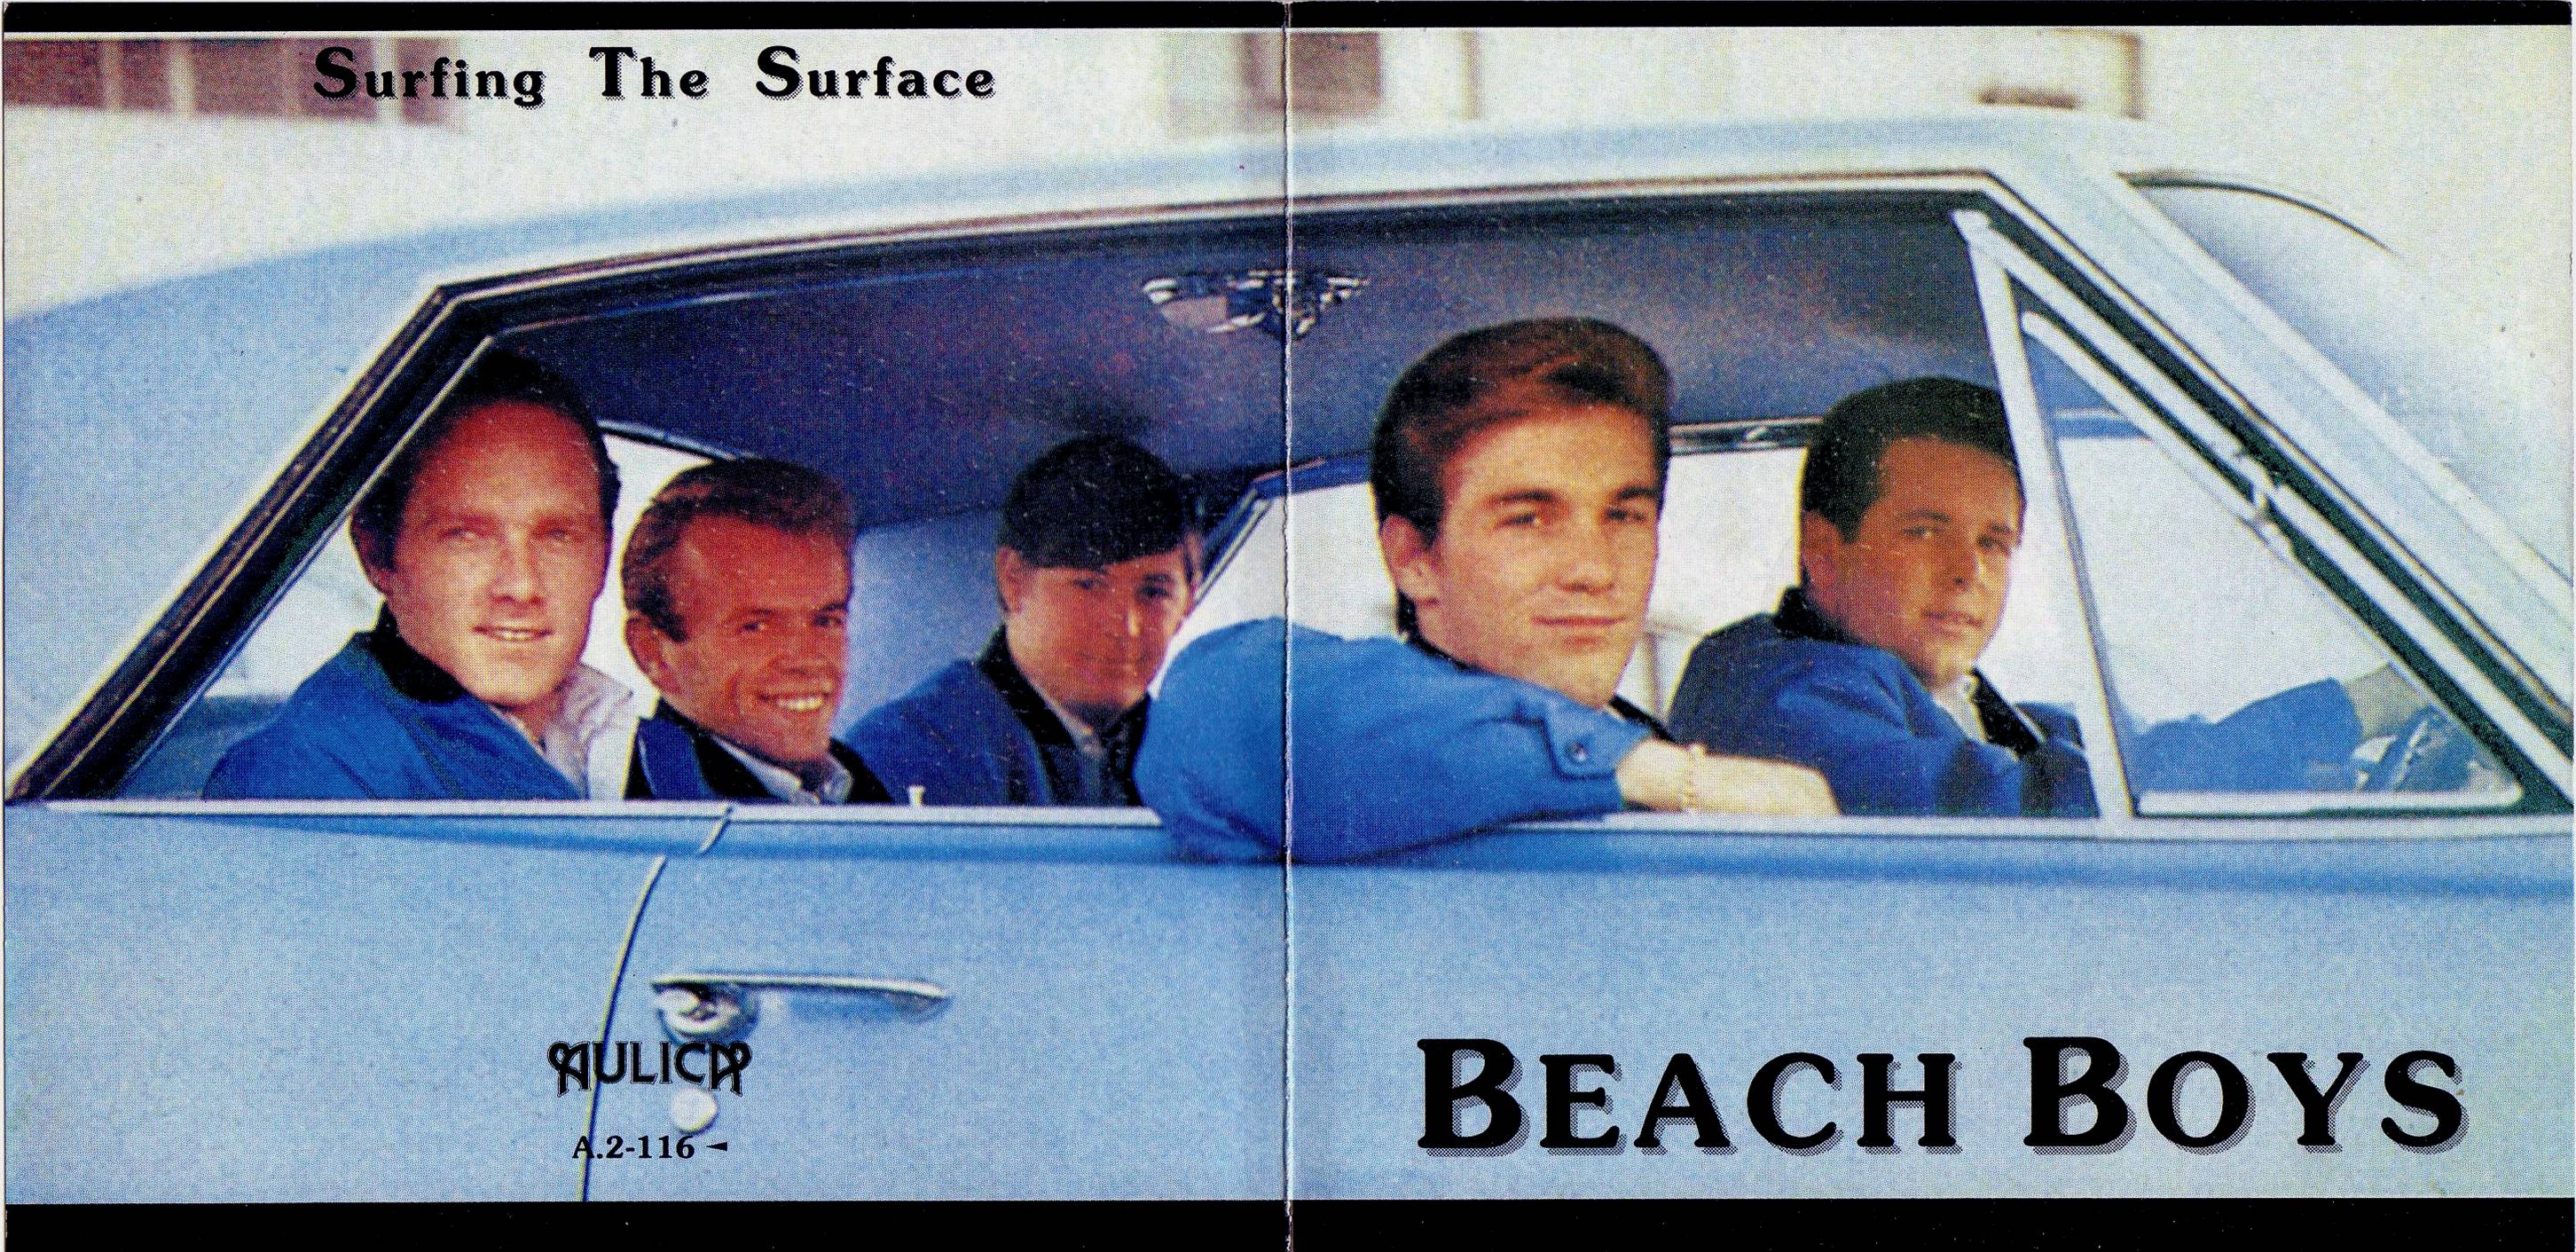 BeachBoys1964-1971SurfingTheSurface (3).jpg